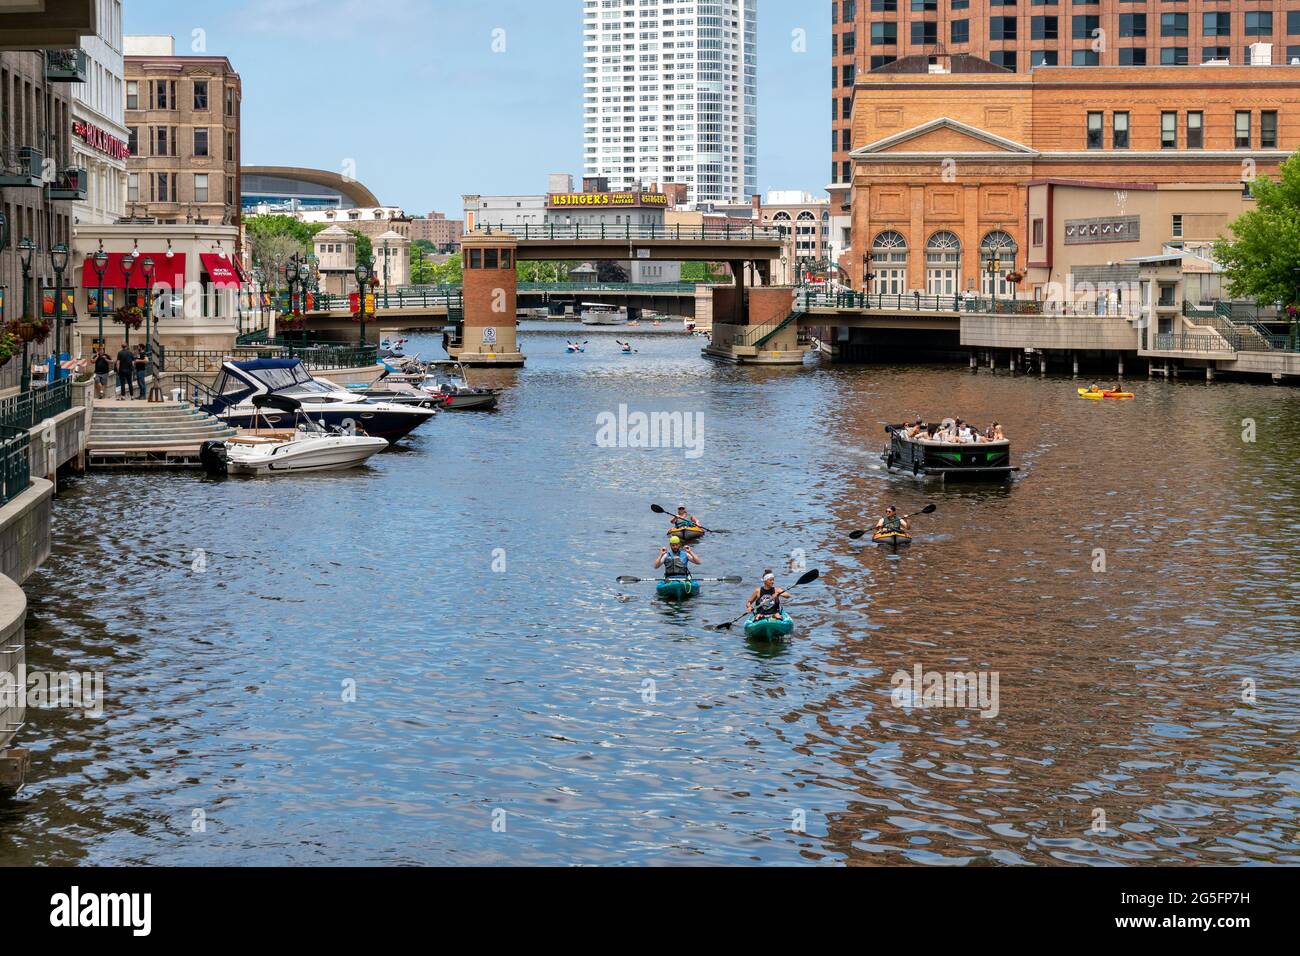 MILWAUKEE, WI, USA - 19. JUNI 2021 - nicht identifizierte Personen, die auf dem Milwaukee River im Riverwalk der Innenstadt von Milwaukee Kajakfahren und Bootfahren Unternehmen. Stockfoto